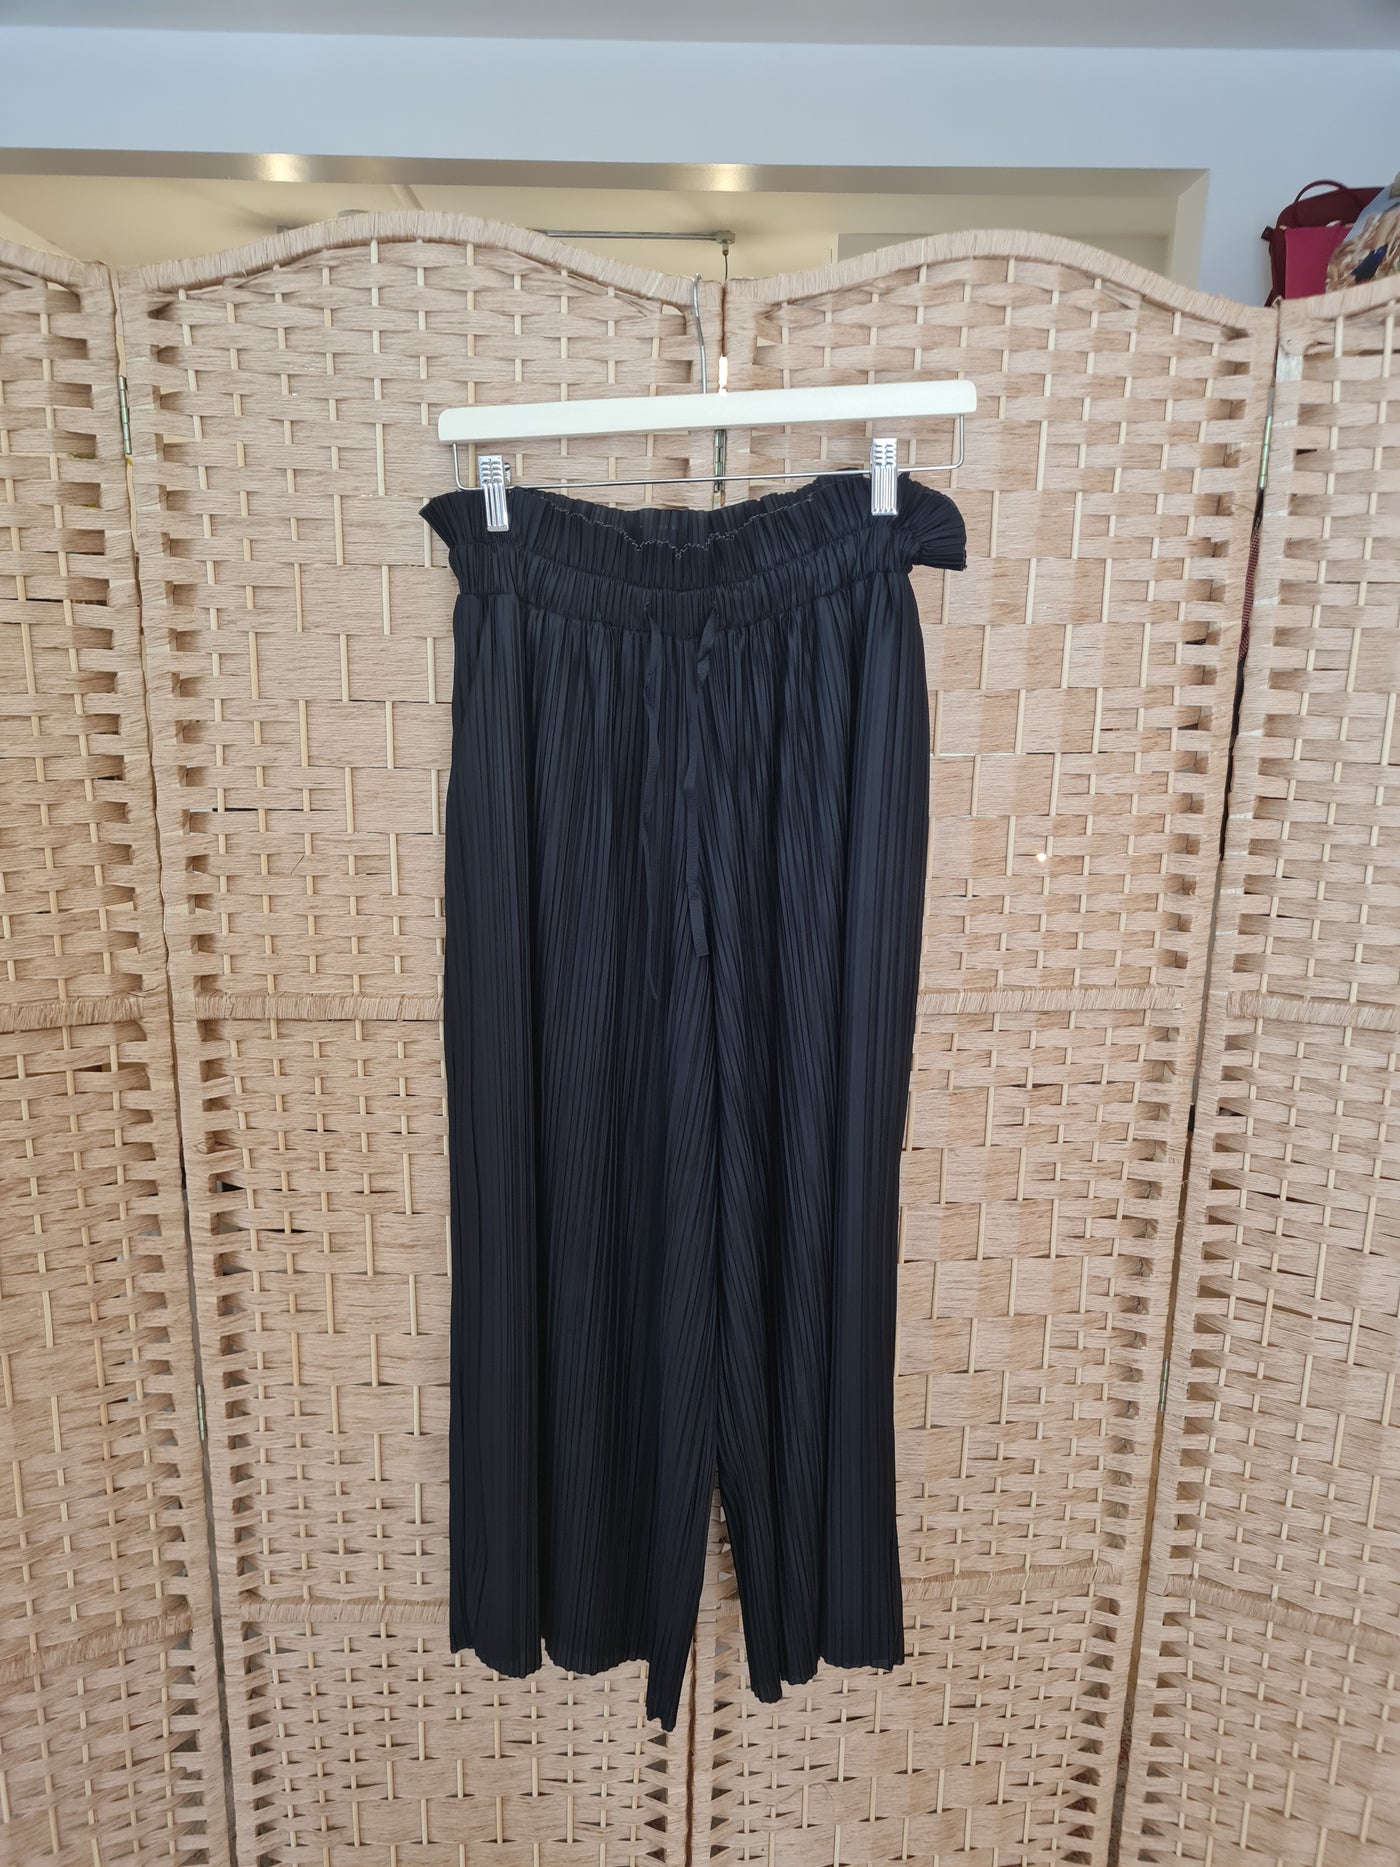 Topshop black plisse trousers 8